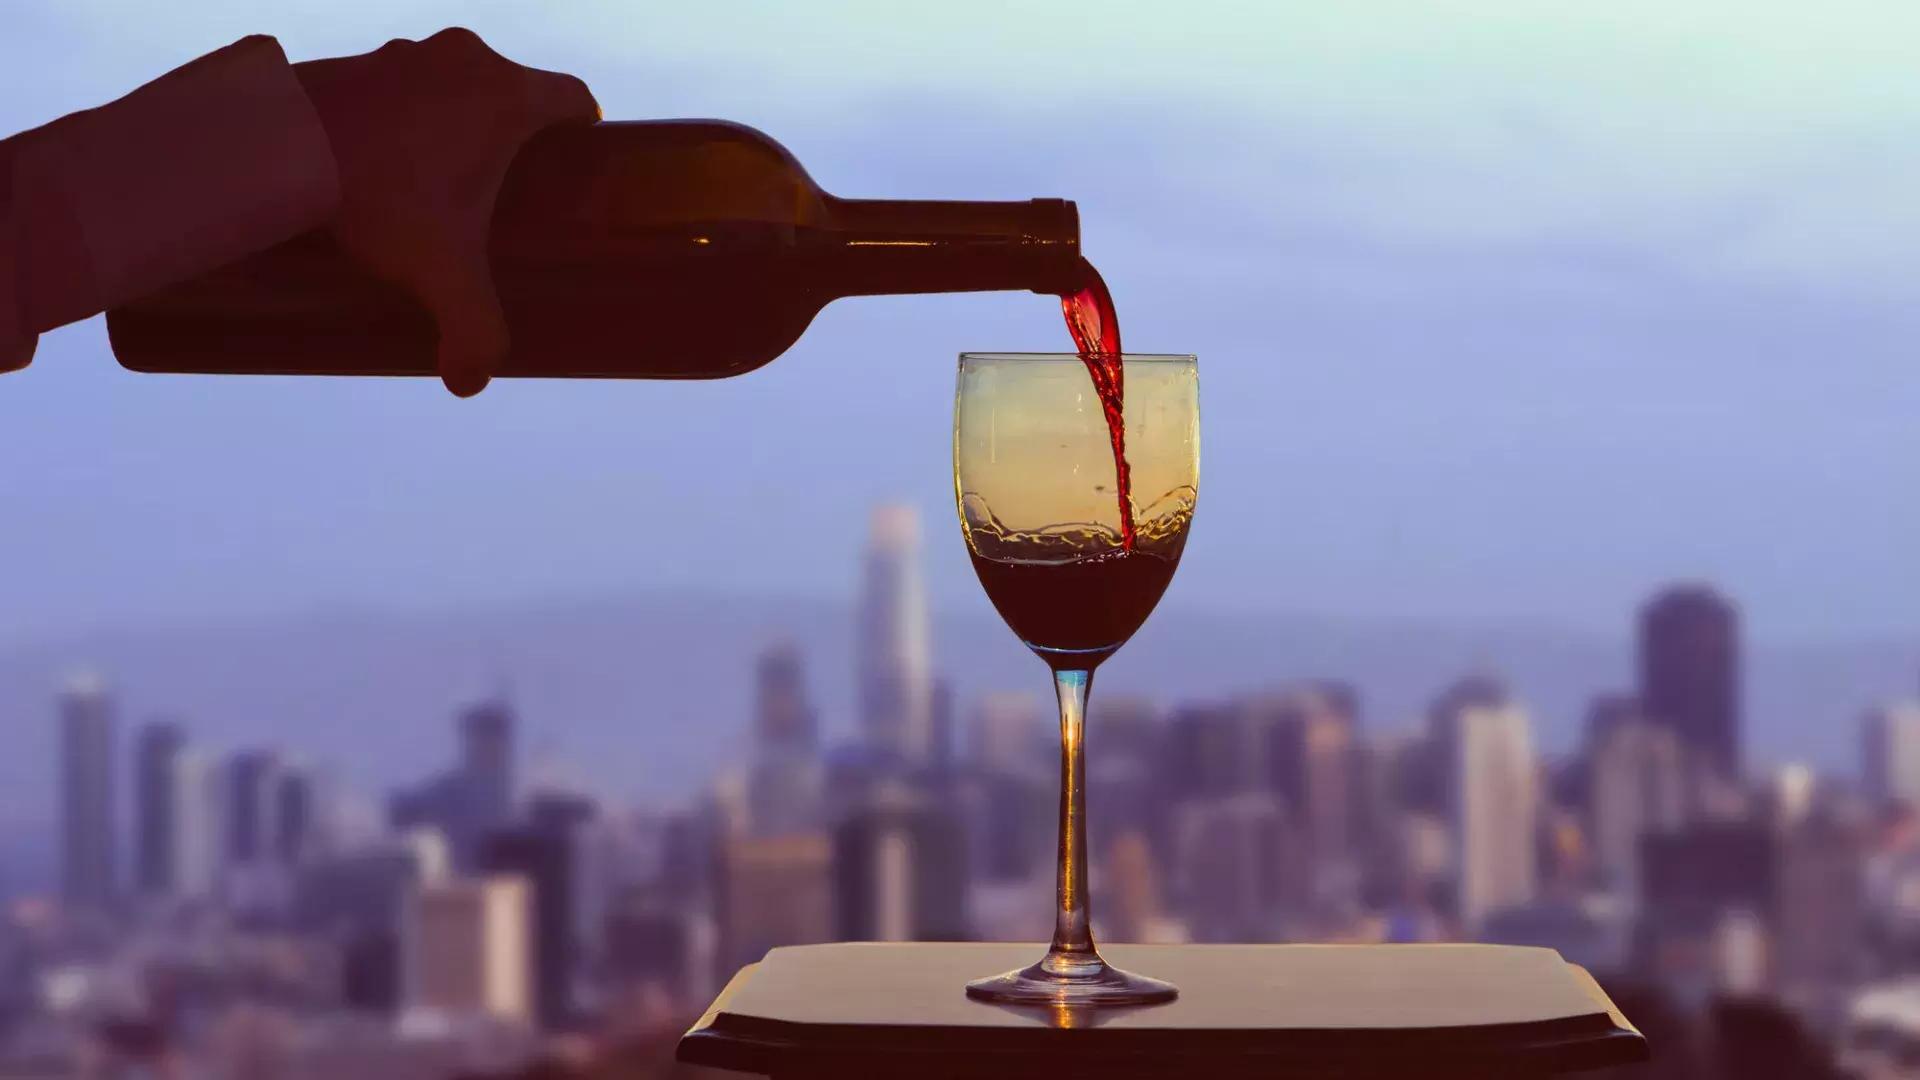 Uma taça de vinho tinto sendo servida, 和 o horizonte de 贝博体彩app visível pela janela.